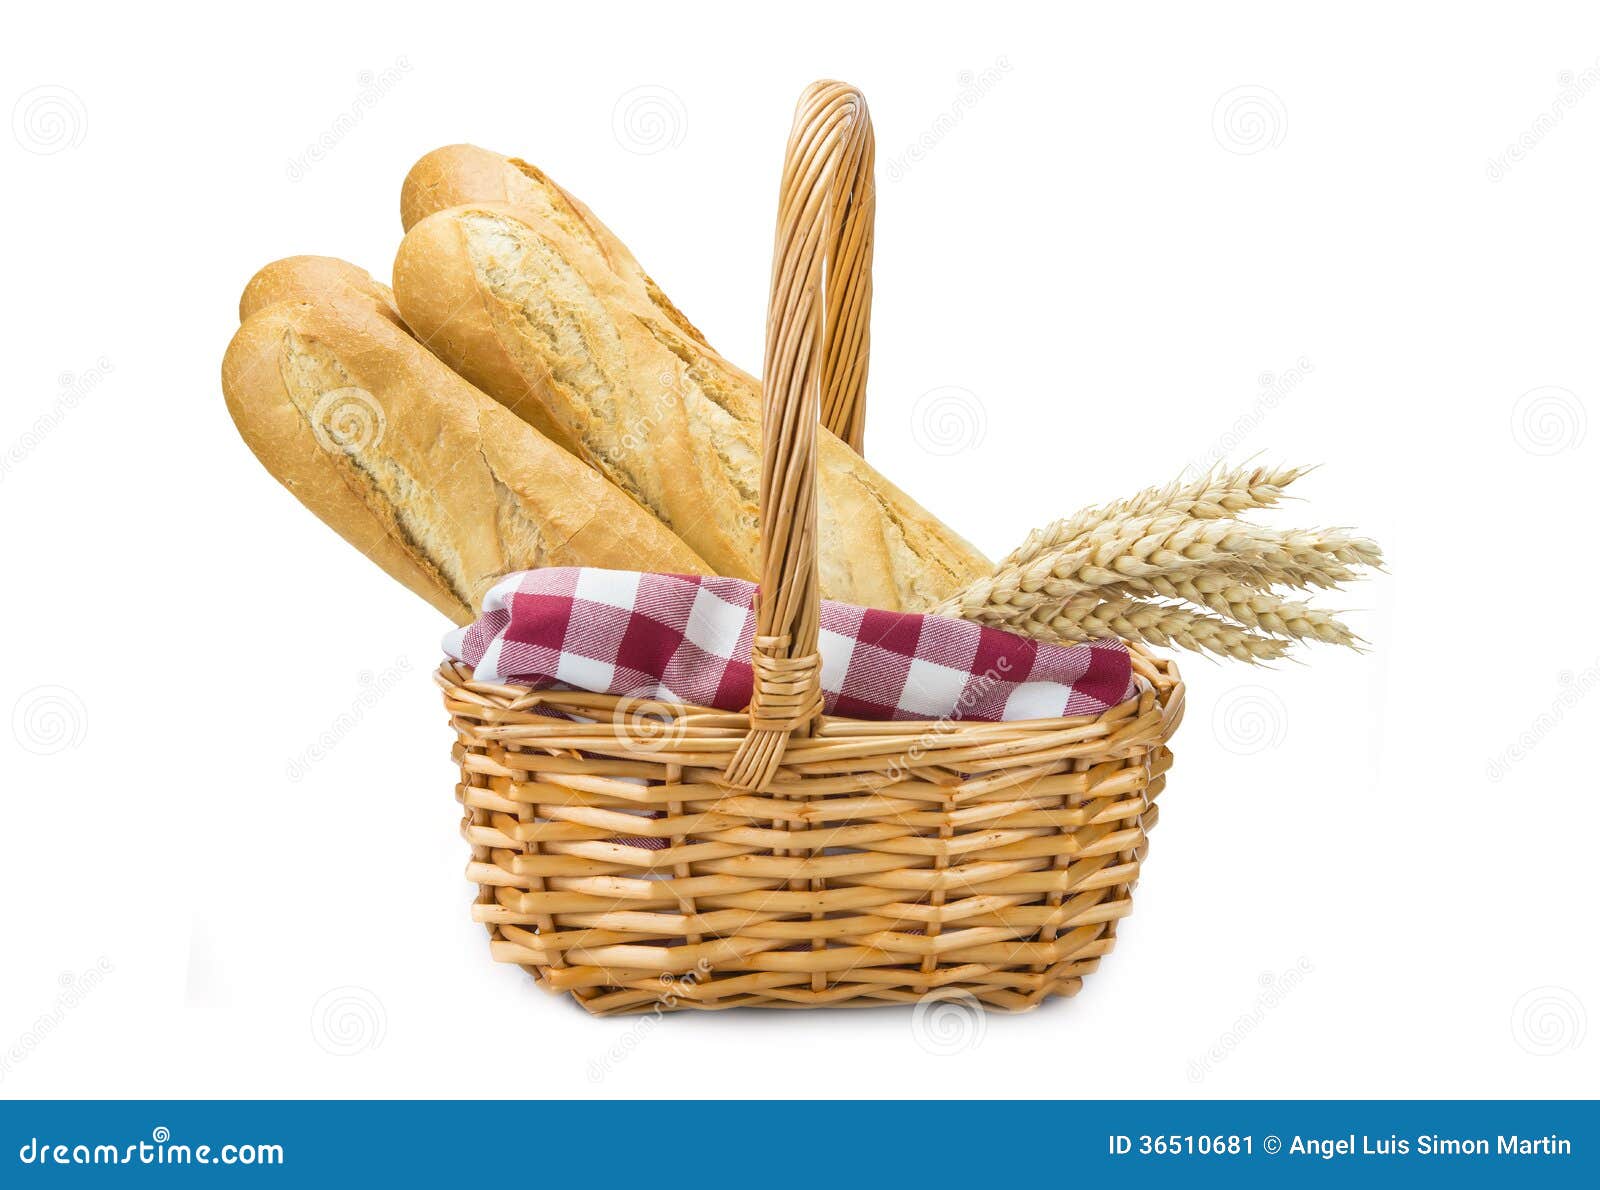 Cesta con pan del trigo imagen de archivo. Imagen de bagueta - 36510681